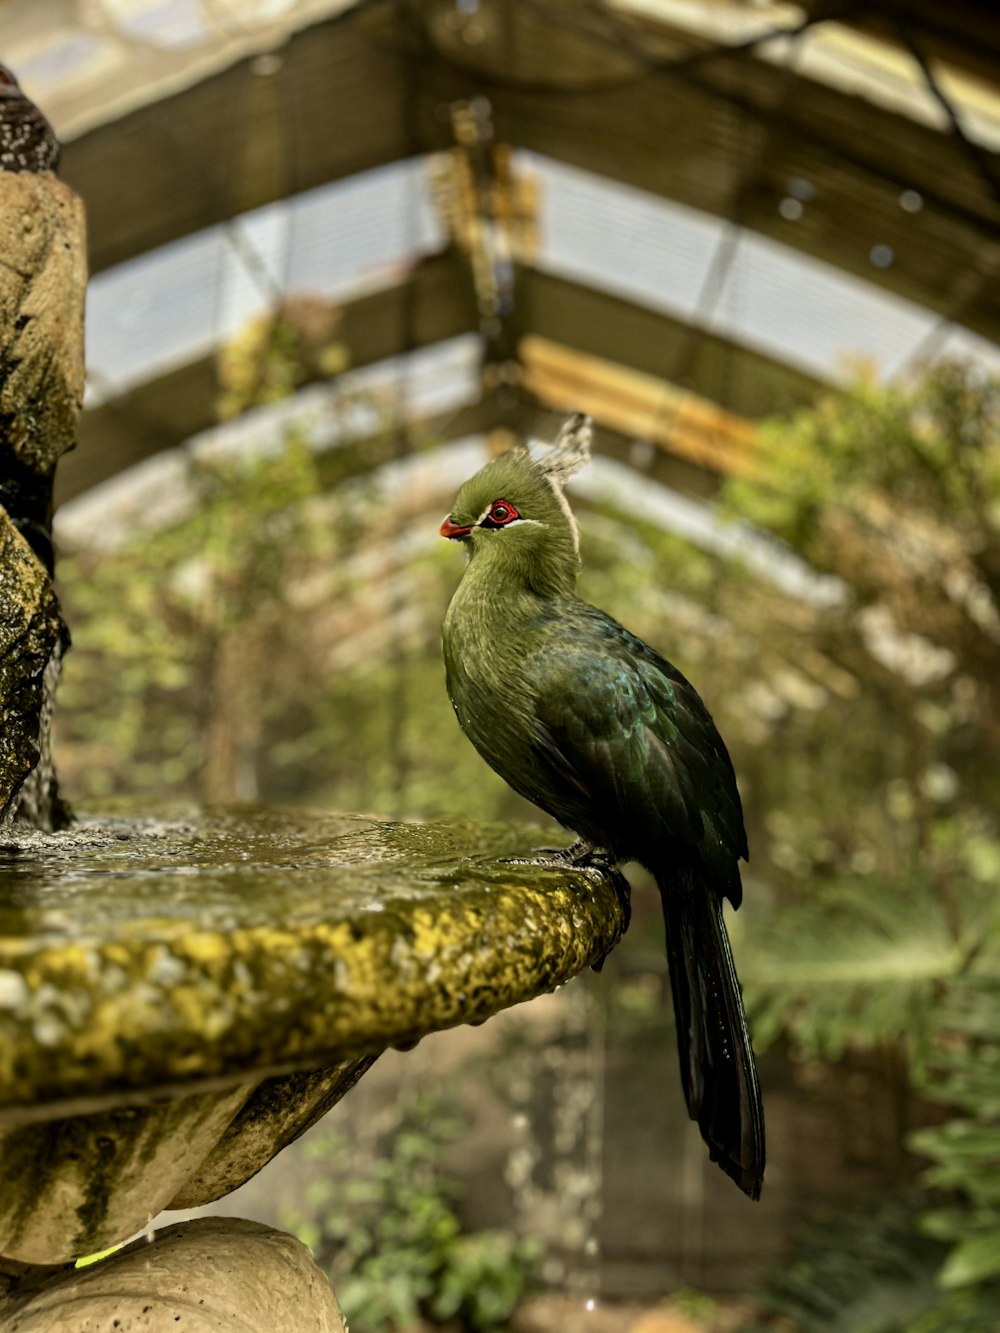 새 욕조 위에 앉아있는 녹색 새